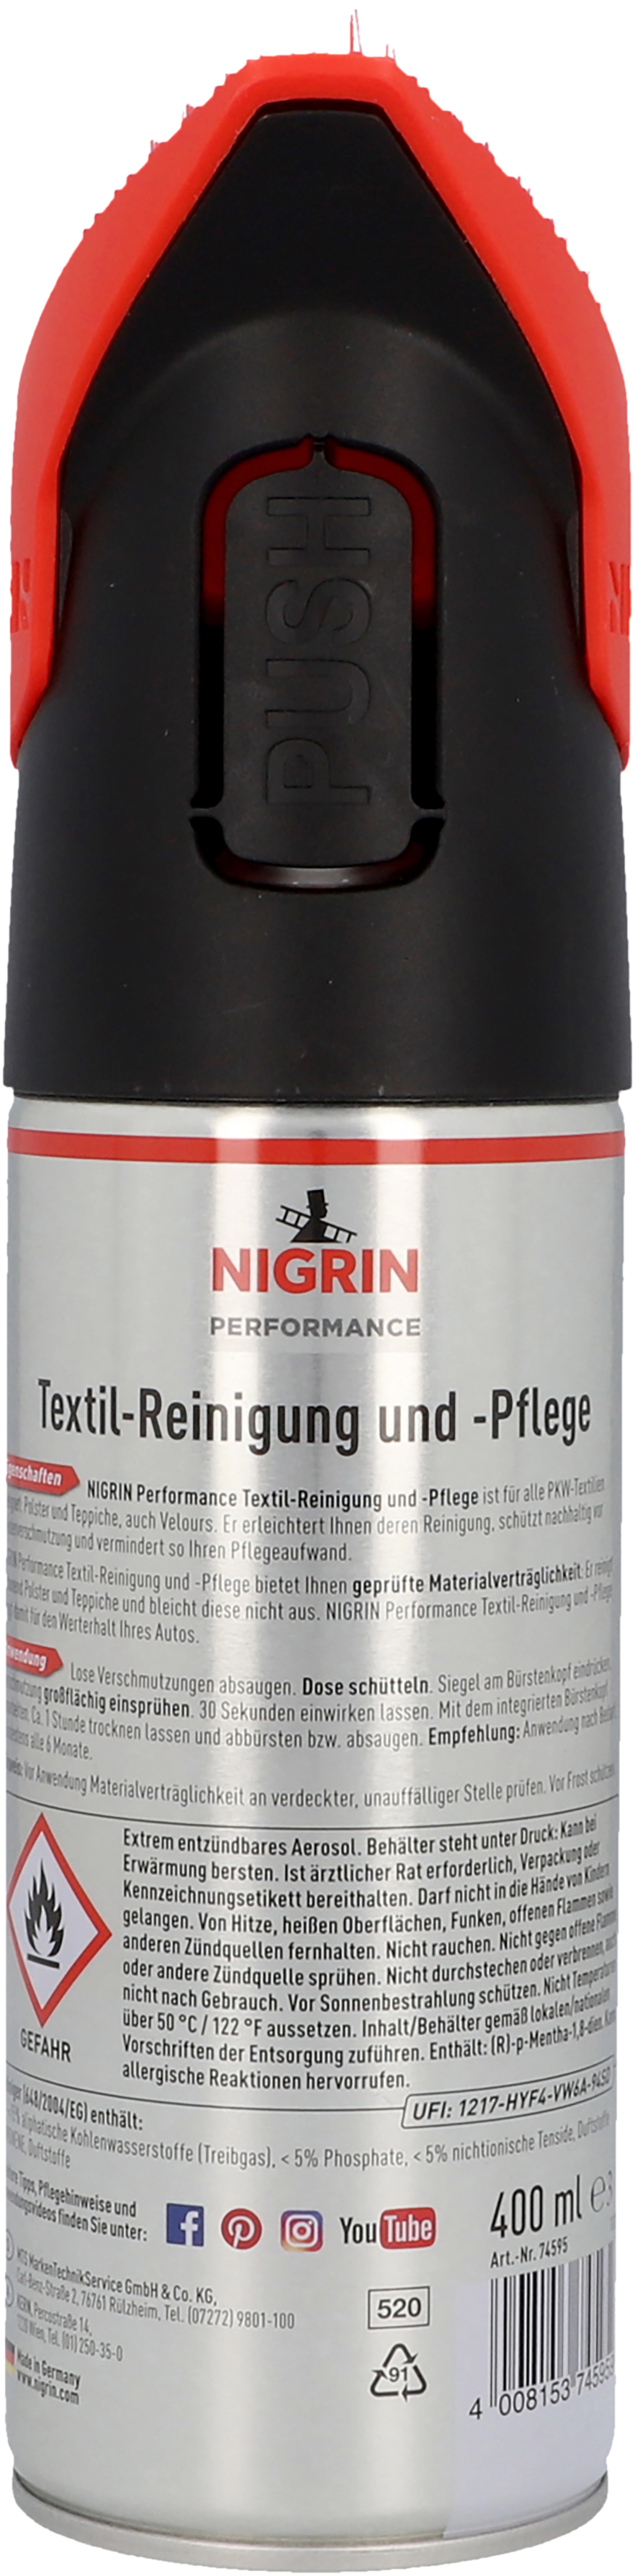 Nigrin Textil-Reinigung und -Pflege 400 ml kaufen bei OBI